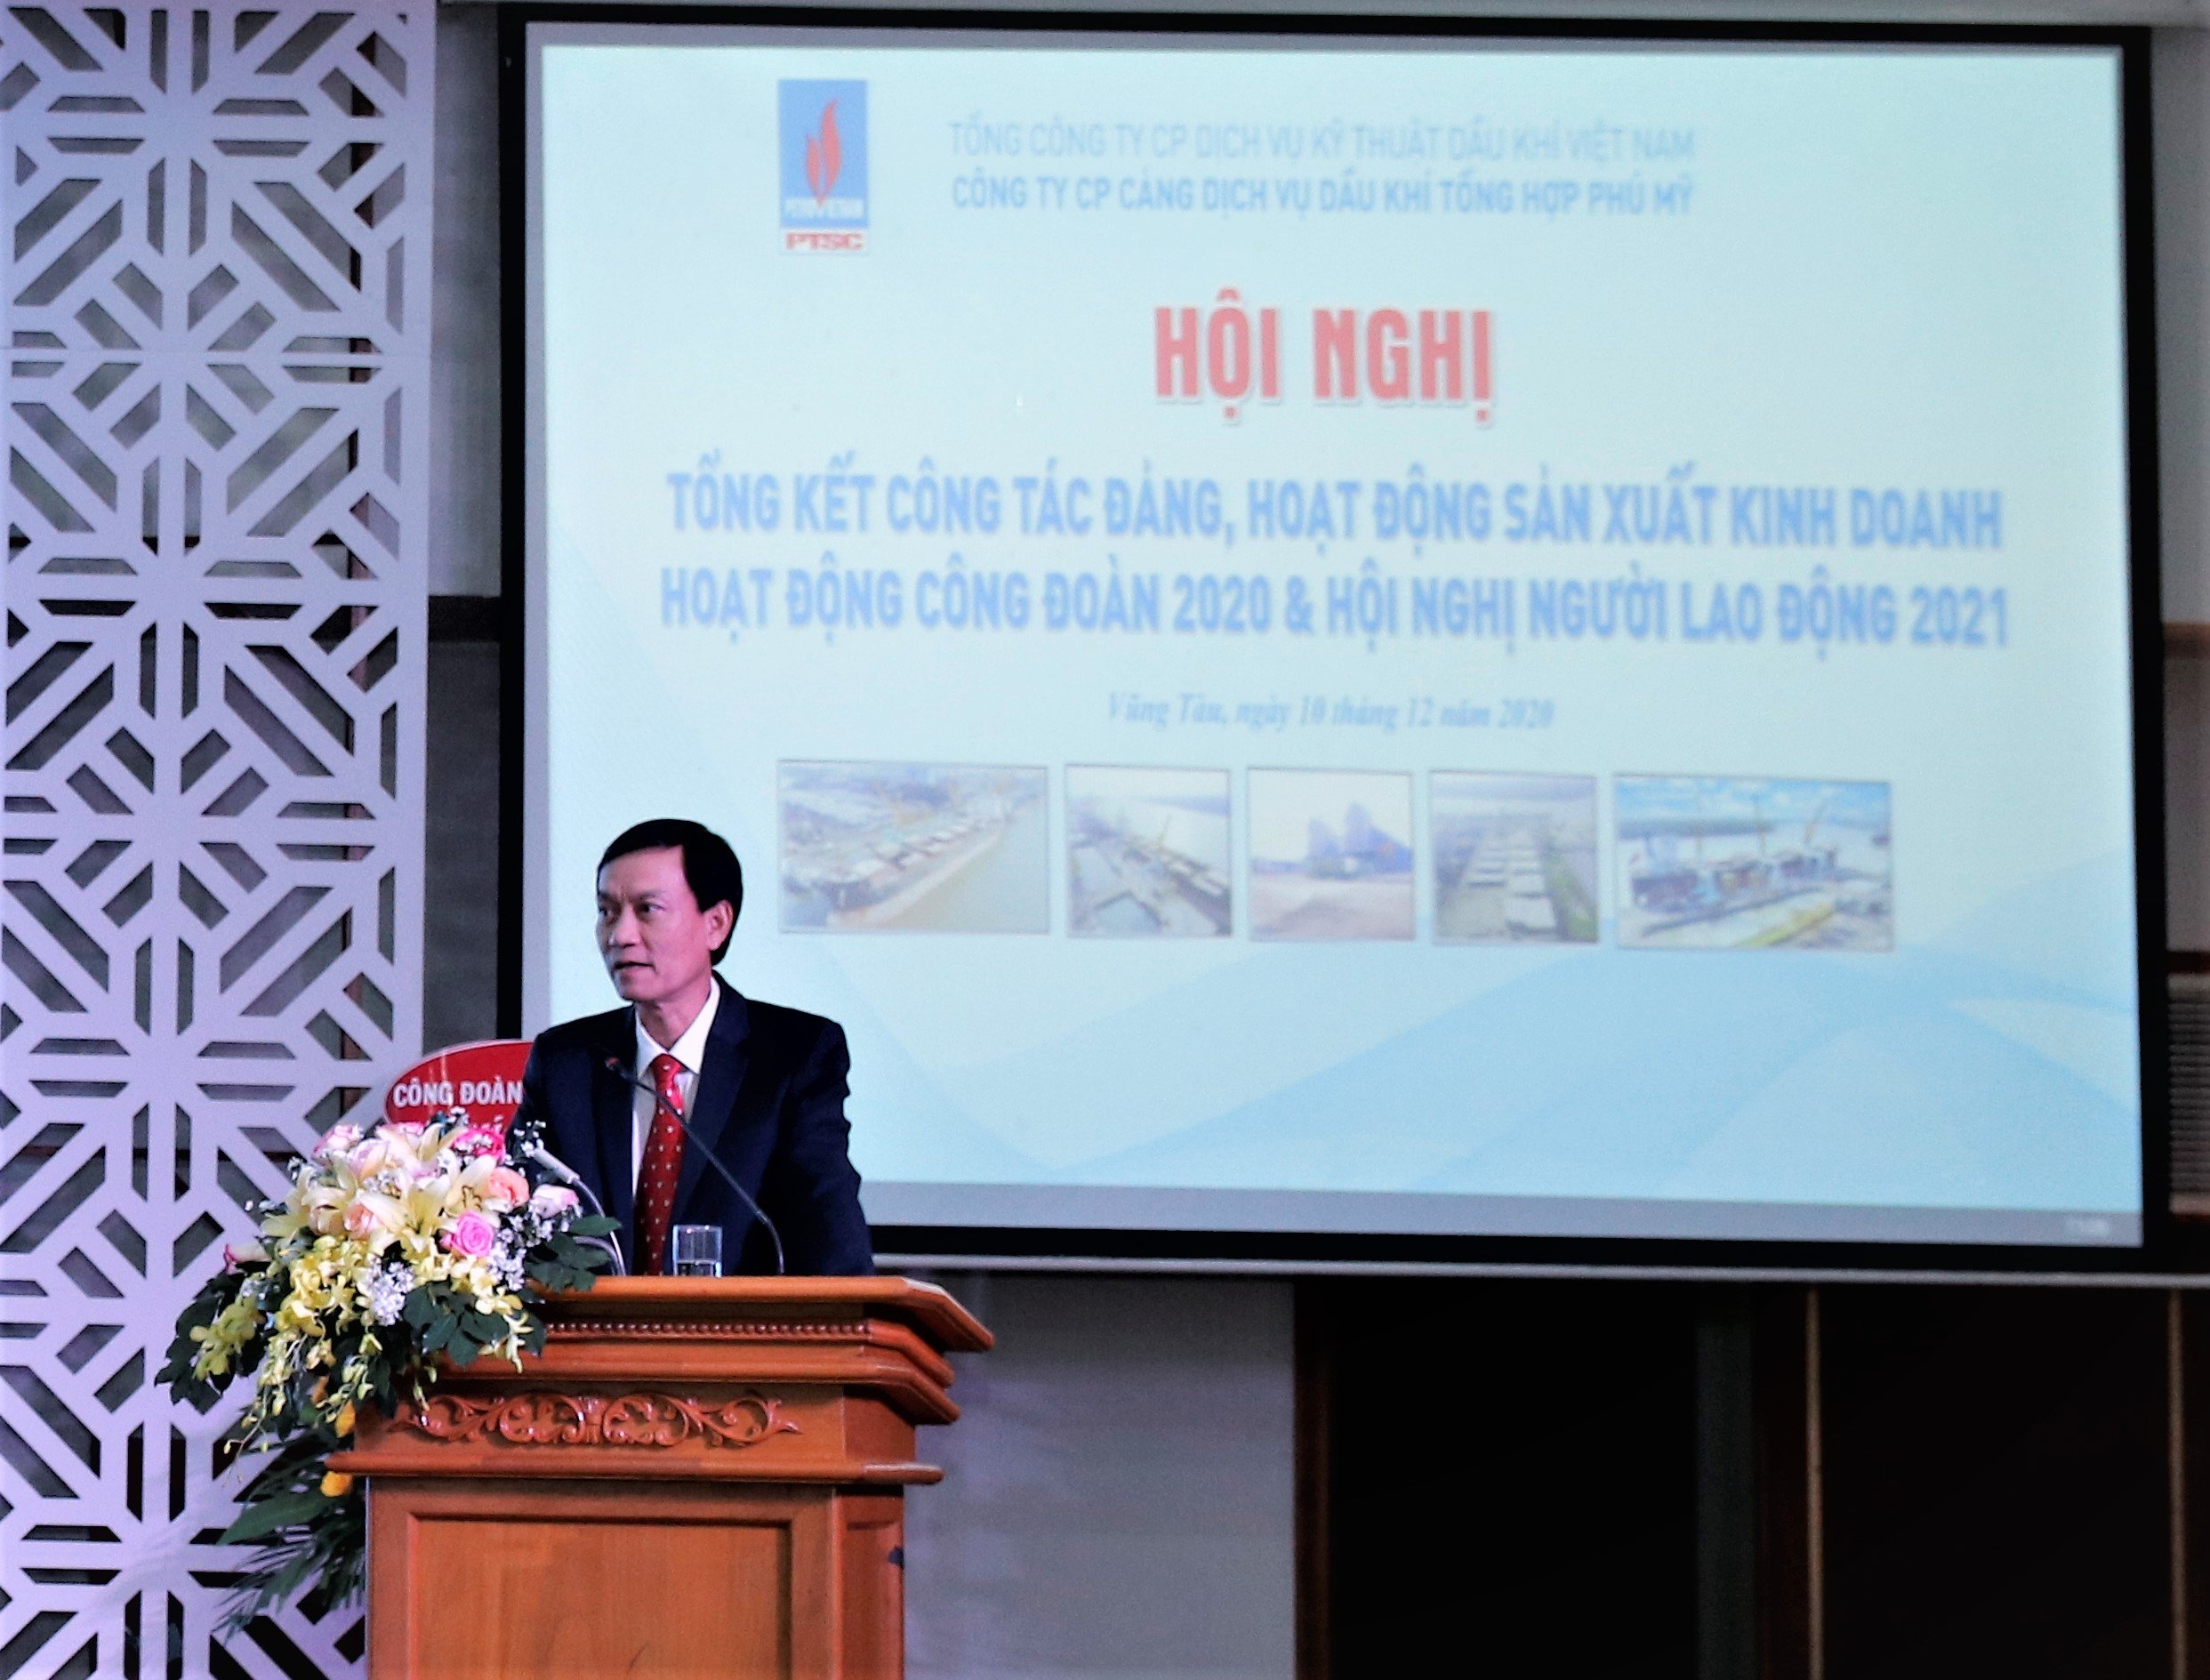 Ông Nguyễn Hữu Hải – Phó Tổng Giám đốc Tổng công ty PTSC phát biểu tại Hội nghị